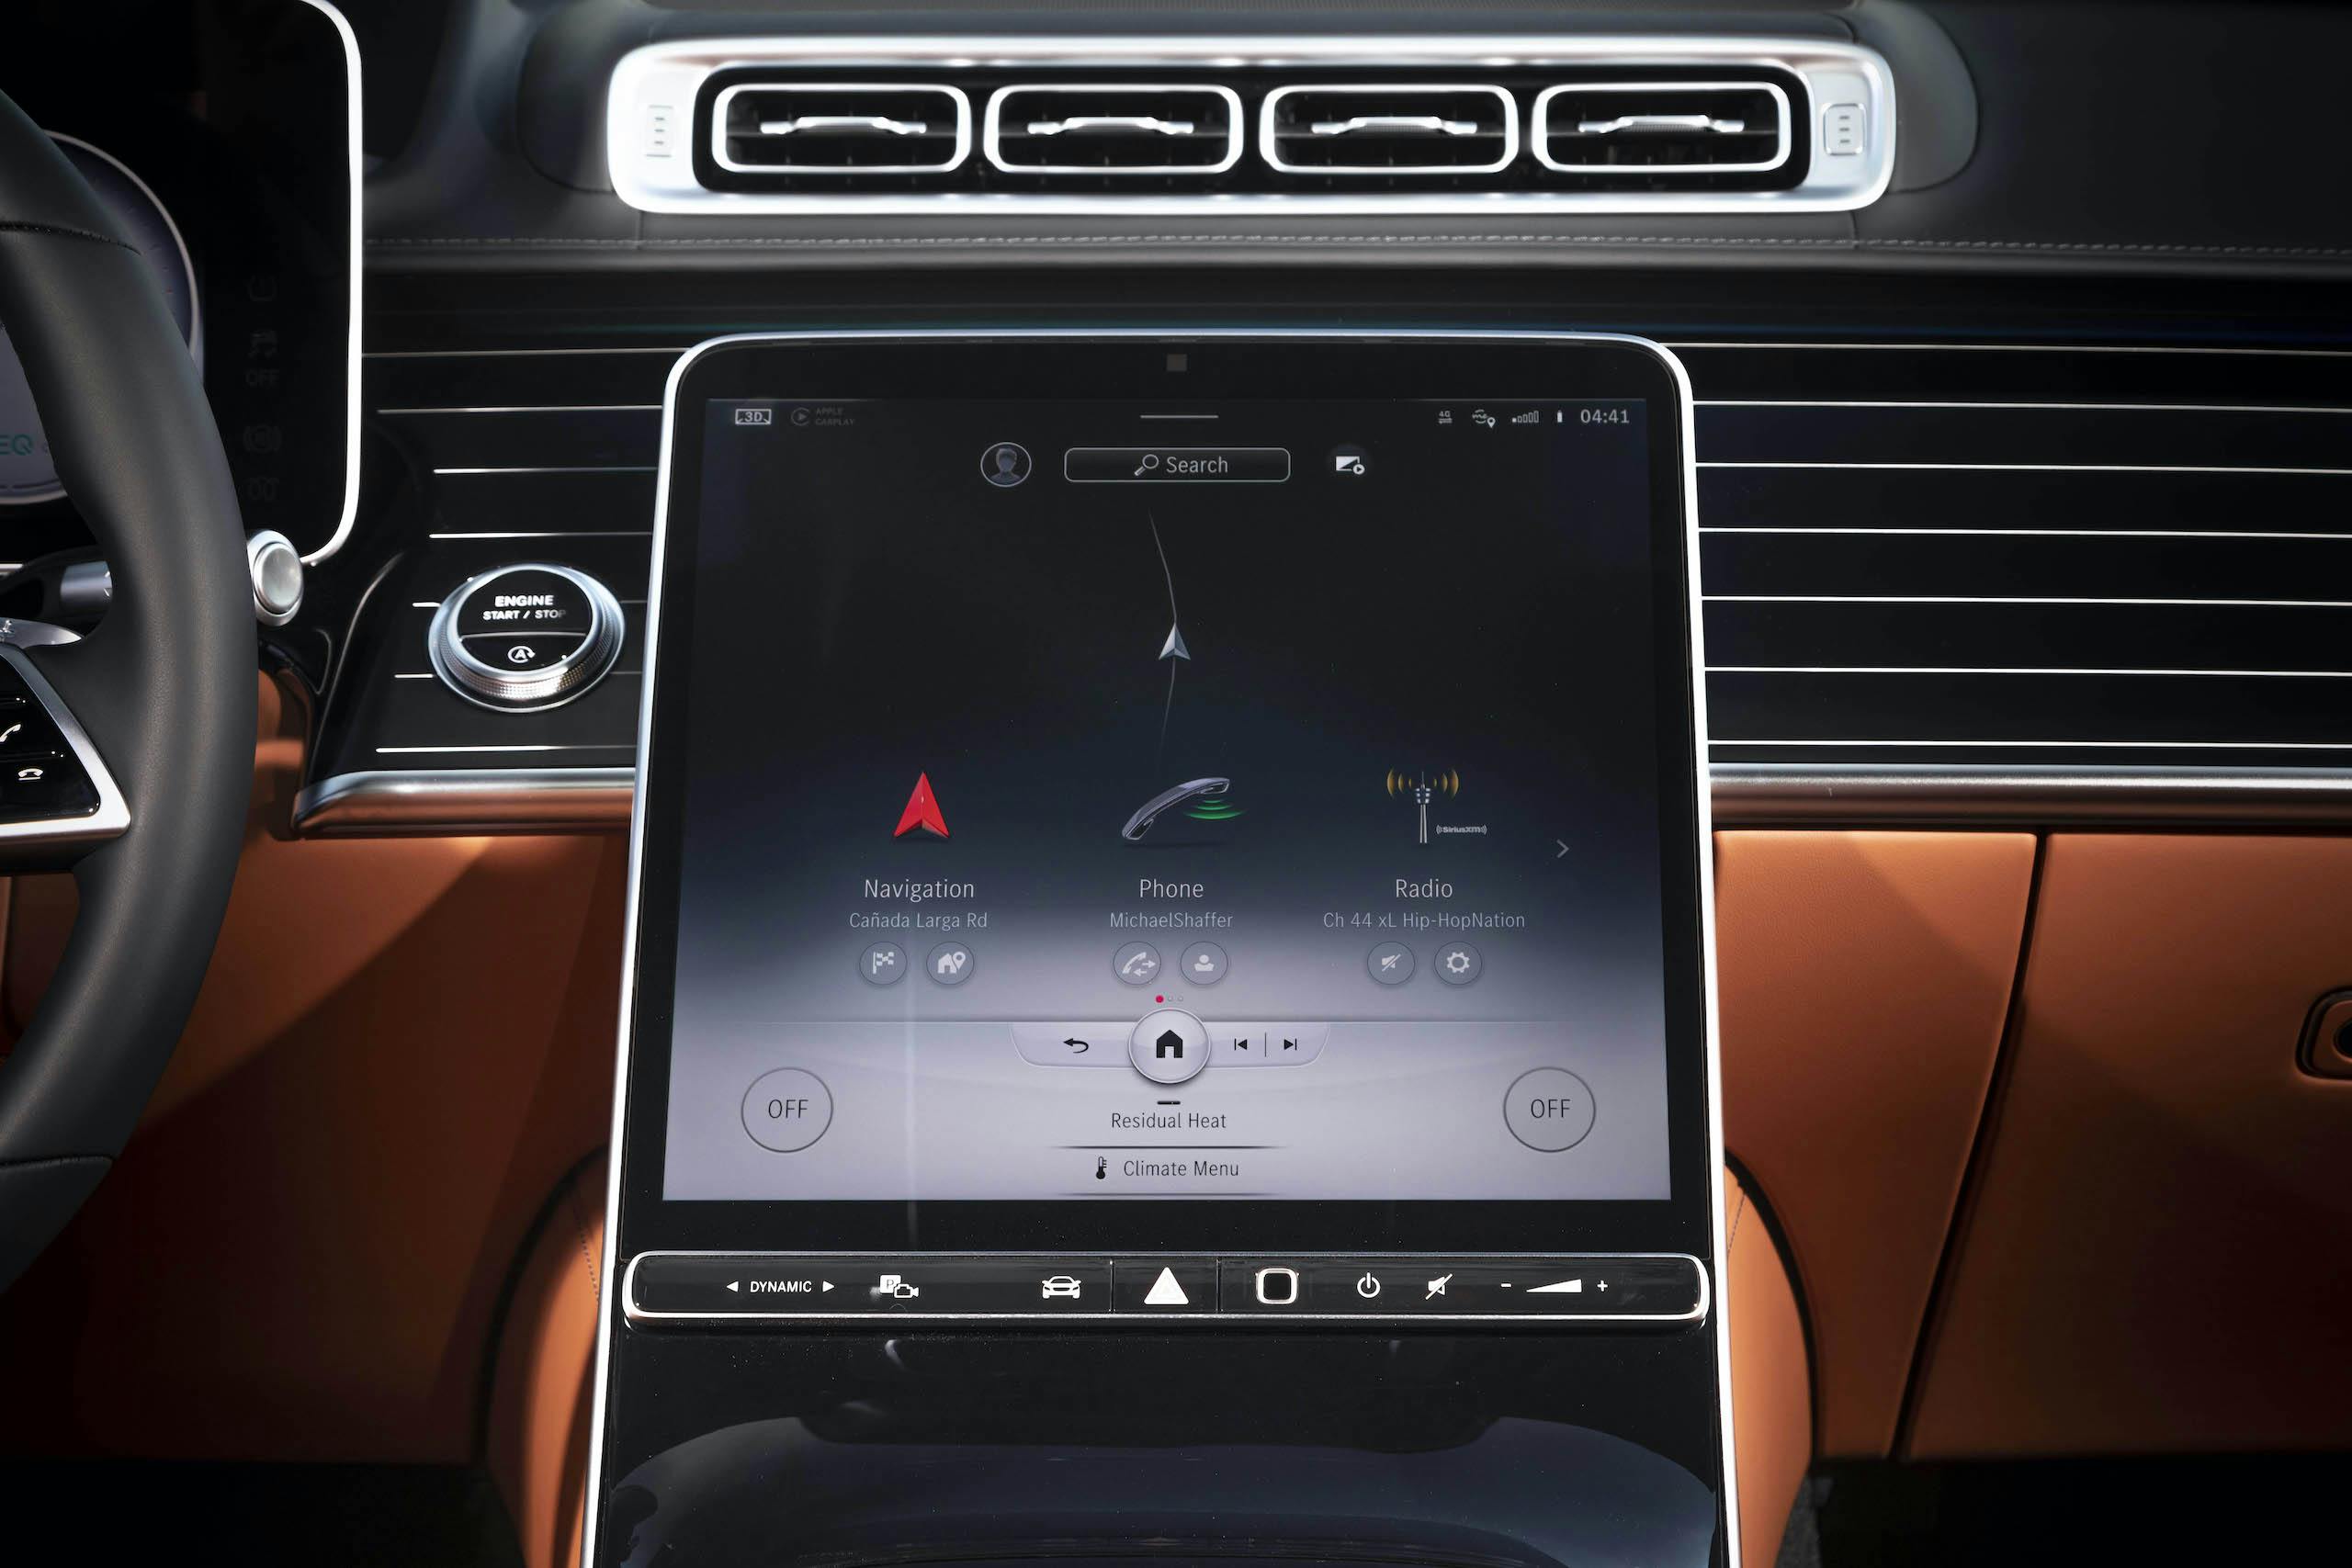 Mercedes Benz-S-Class interior infotainment screen